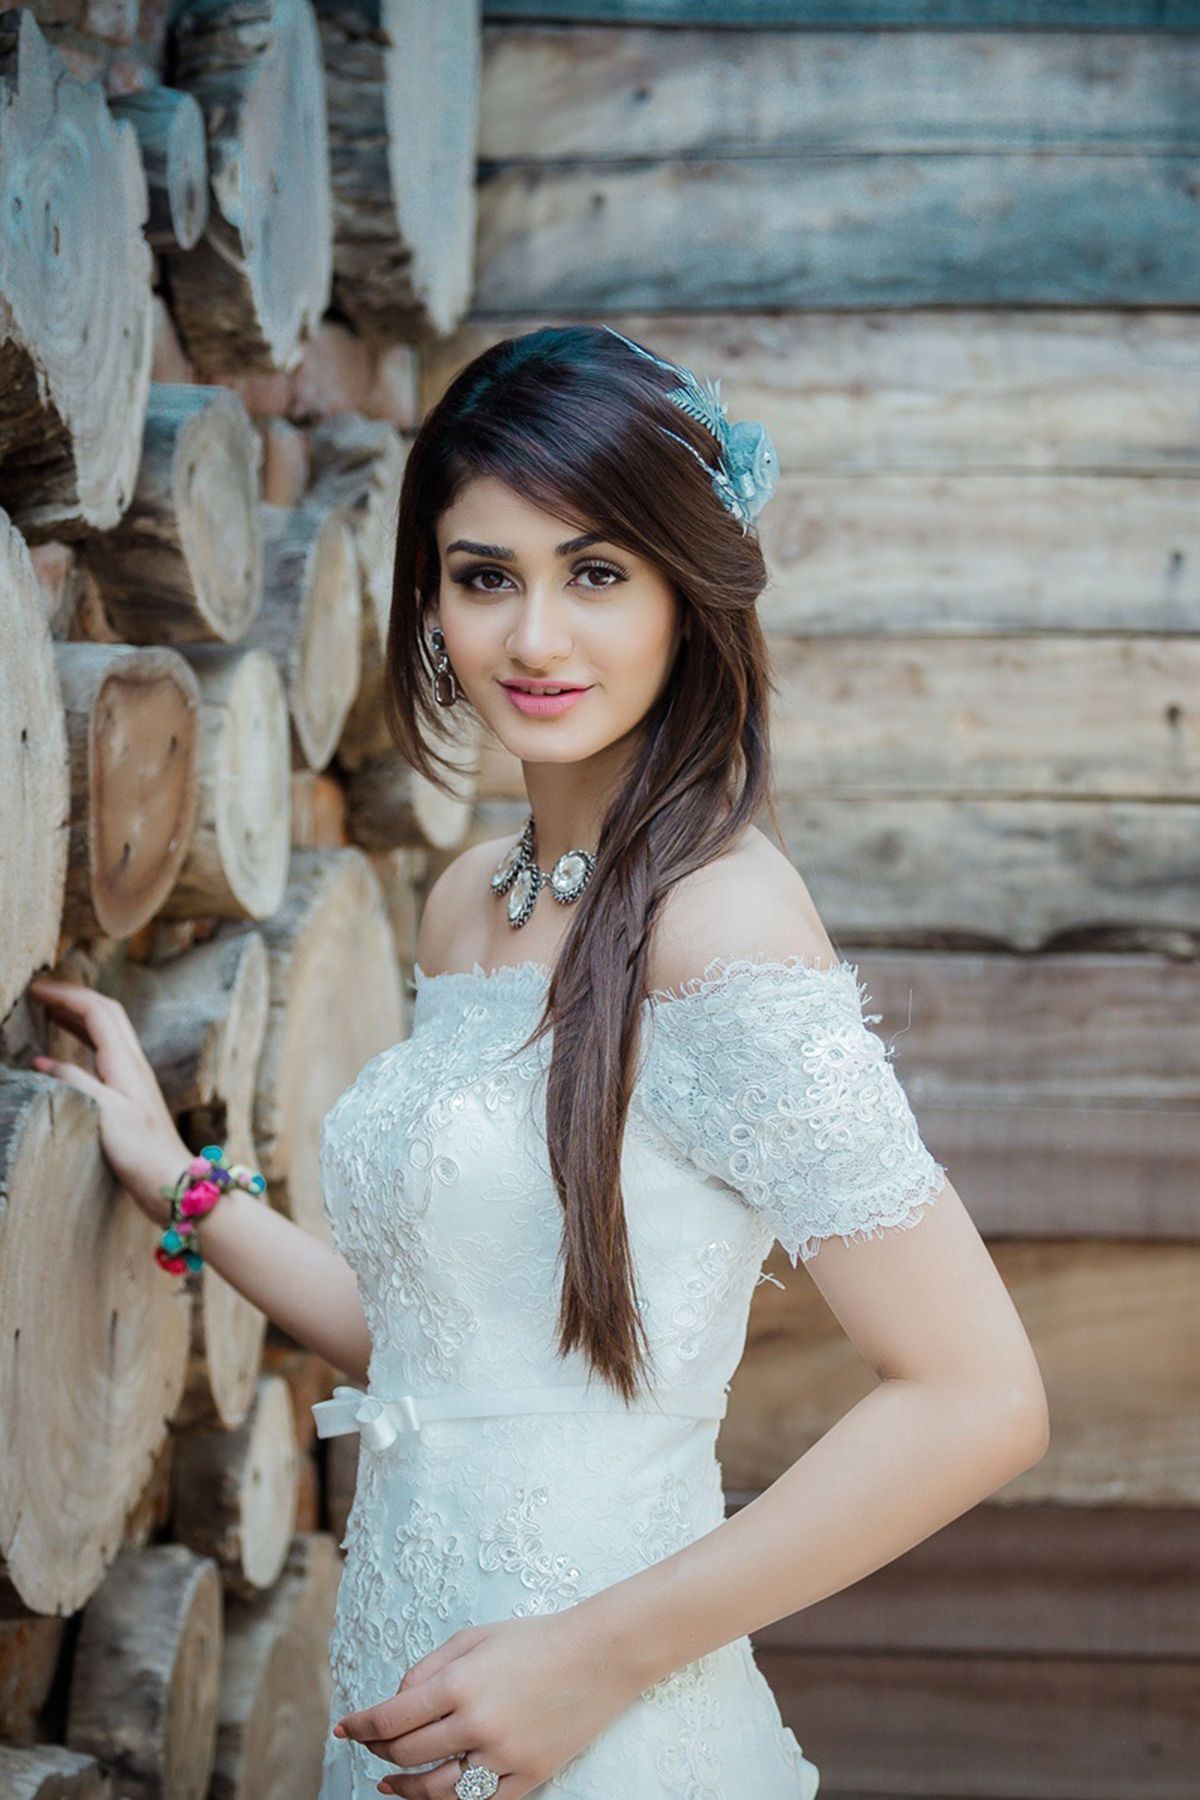 Beautiful Indian girl white stylish dress picture mobile wallpaper #Actress #Beautiful #Indian #girl #white #stylis. Dress picture, Indian girls, Stylish dresses